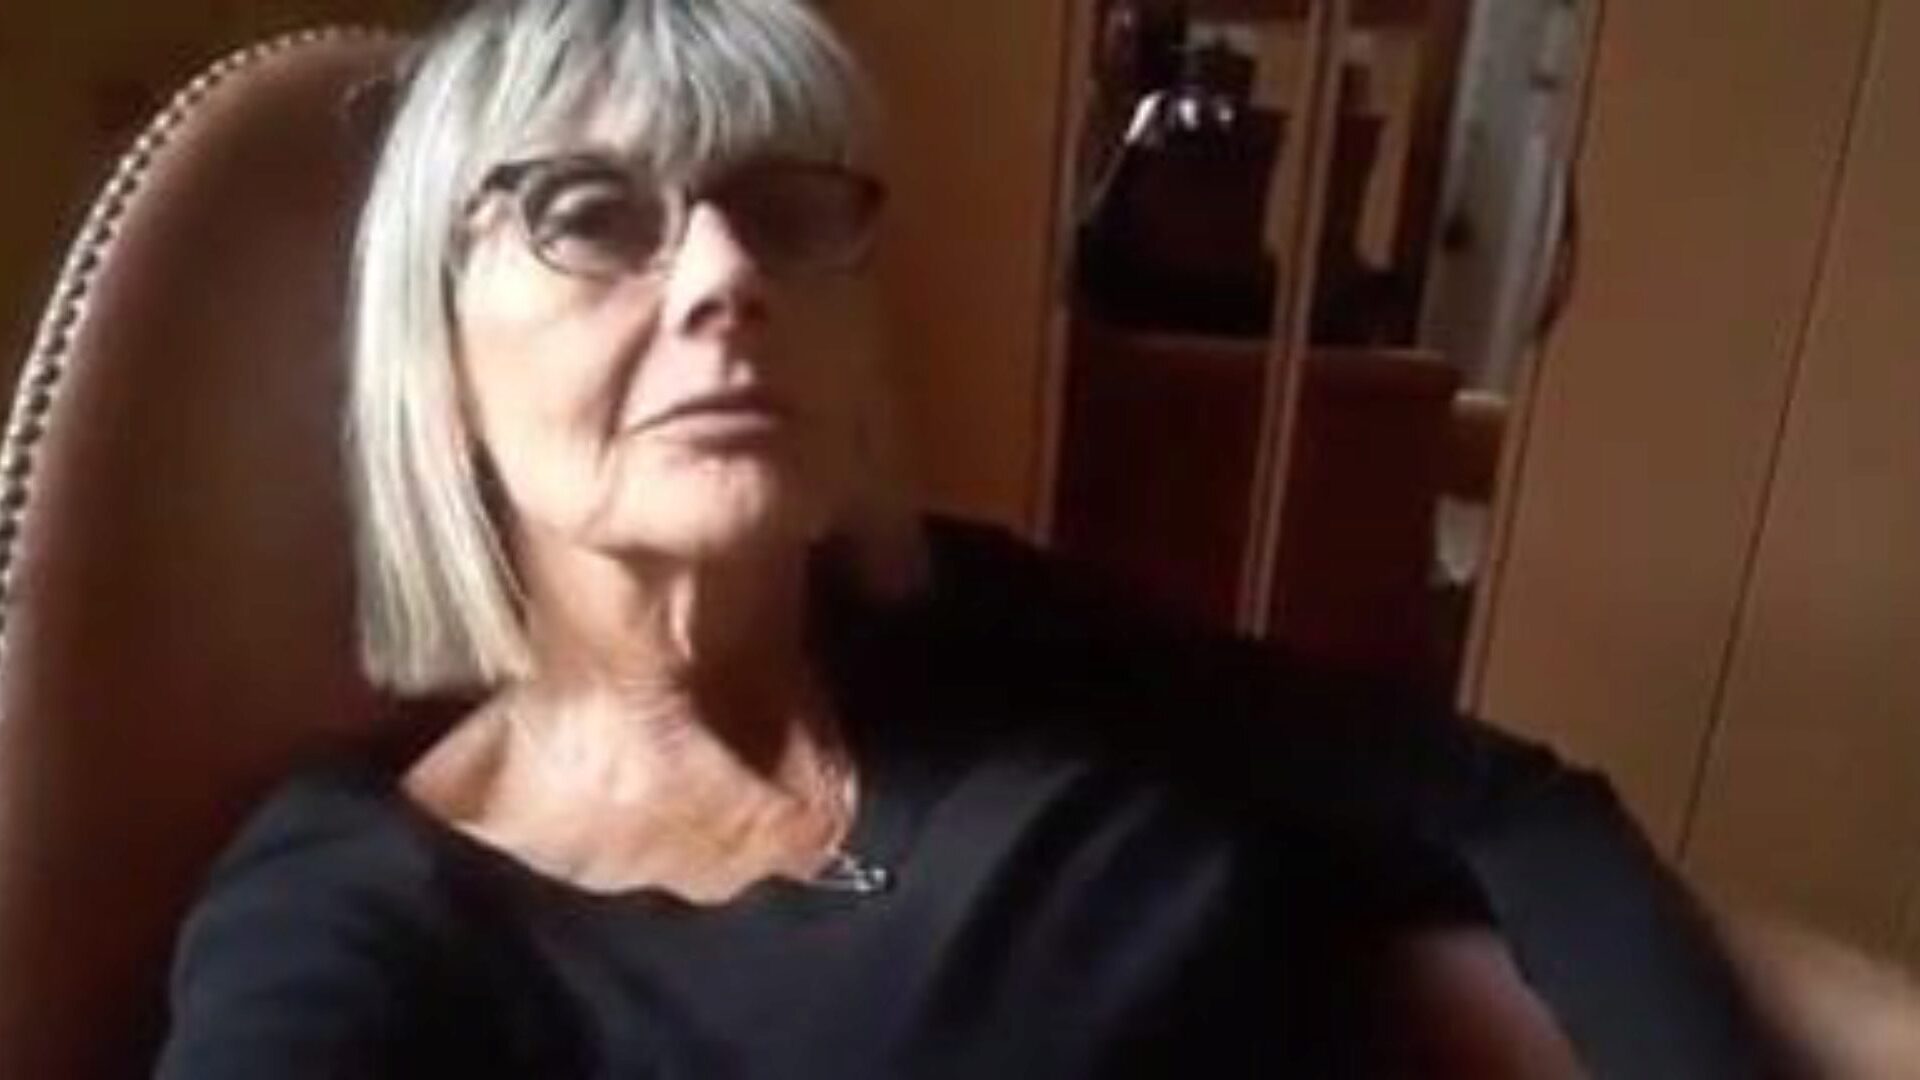 bunicuță masturbare: bunicuță dvd video porno 41 - xhamster urmărește bunicuță masturbare canal dracu-un-thon episod gratuit pe xhamster, cu minunata grupă de bunicuță franceză dvd și tub roșu concerte video porno xxx